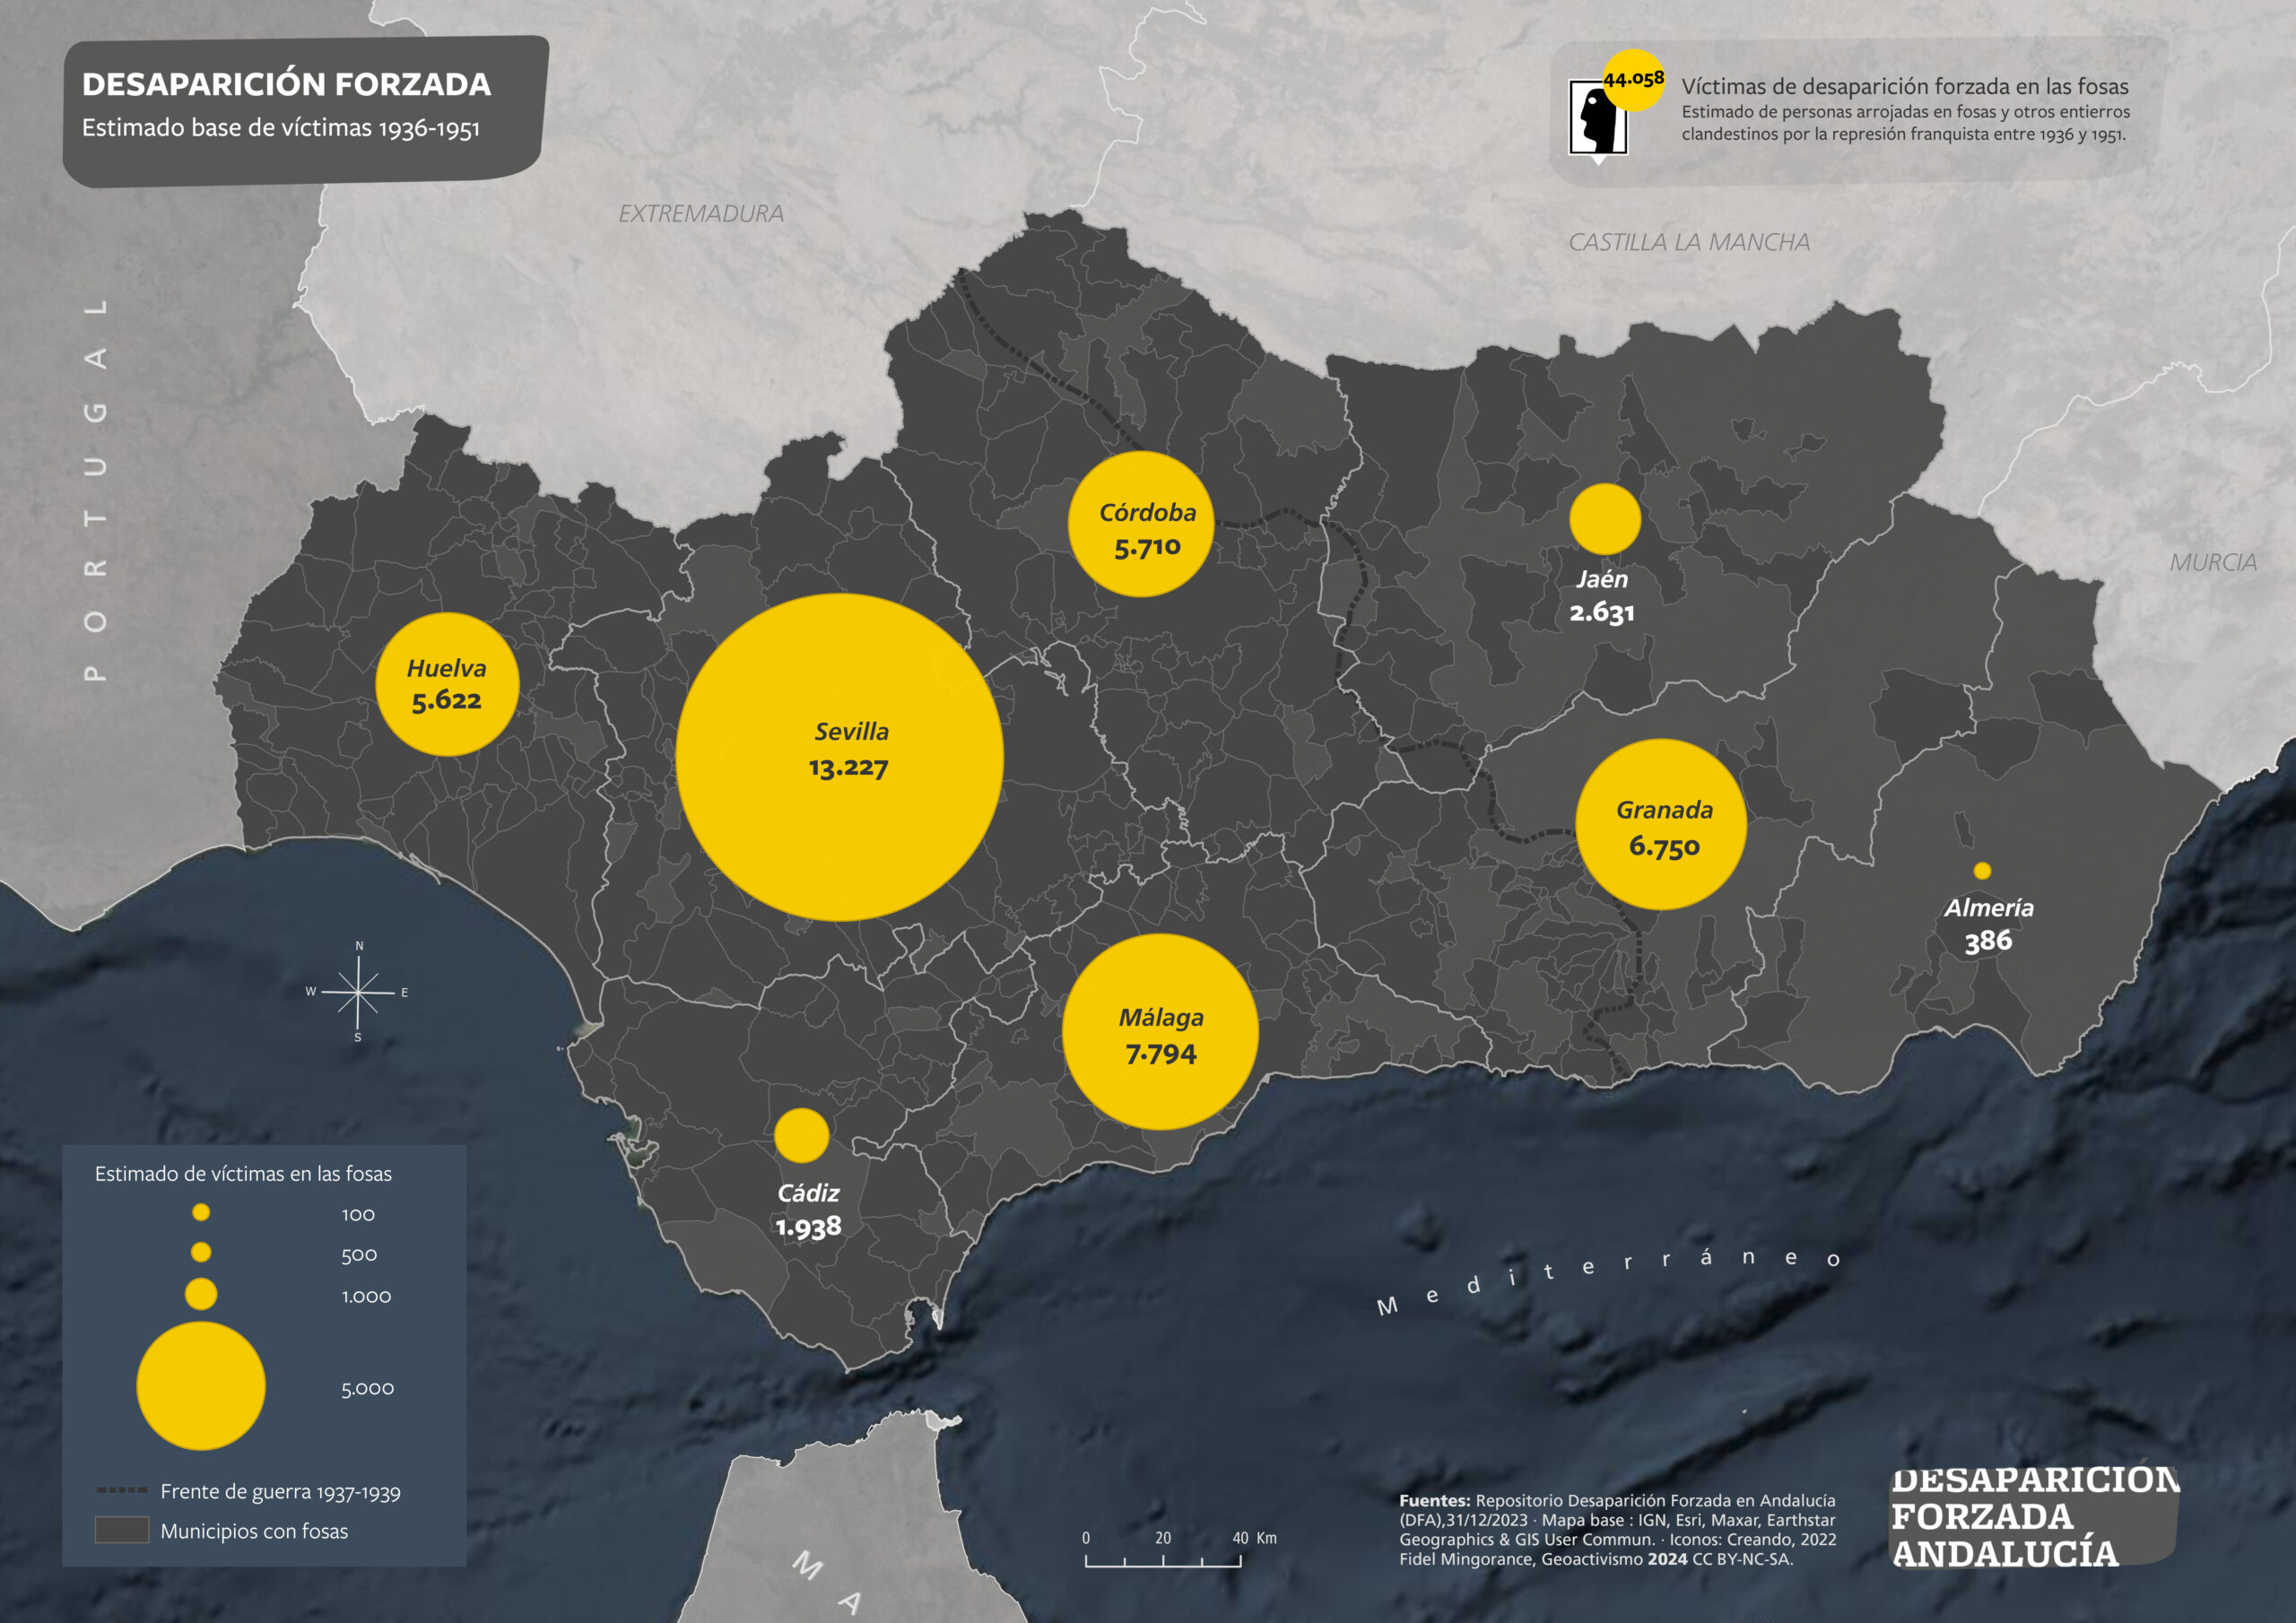 Víctimas de desaparición forzada en Andalucía 1936-1951 (agregado provincial)